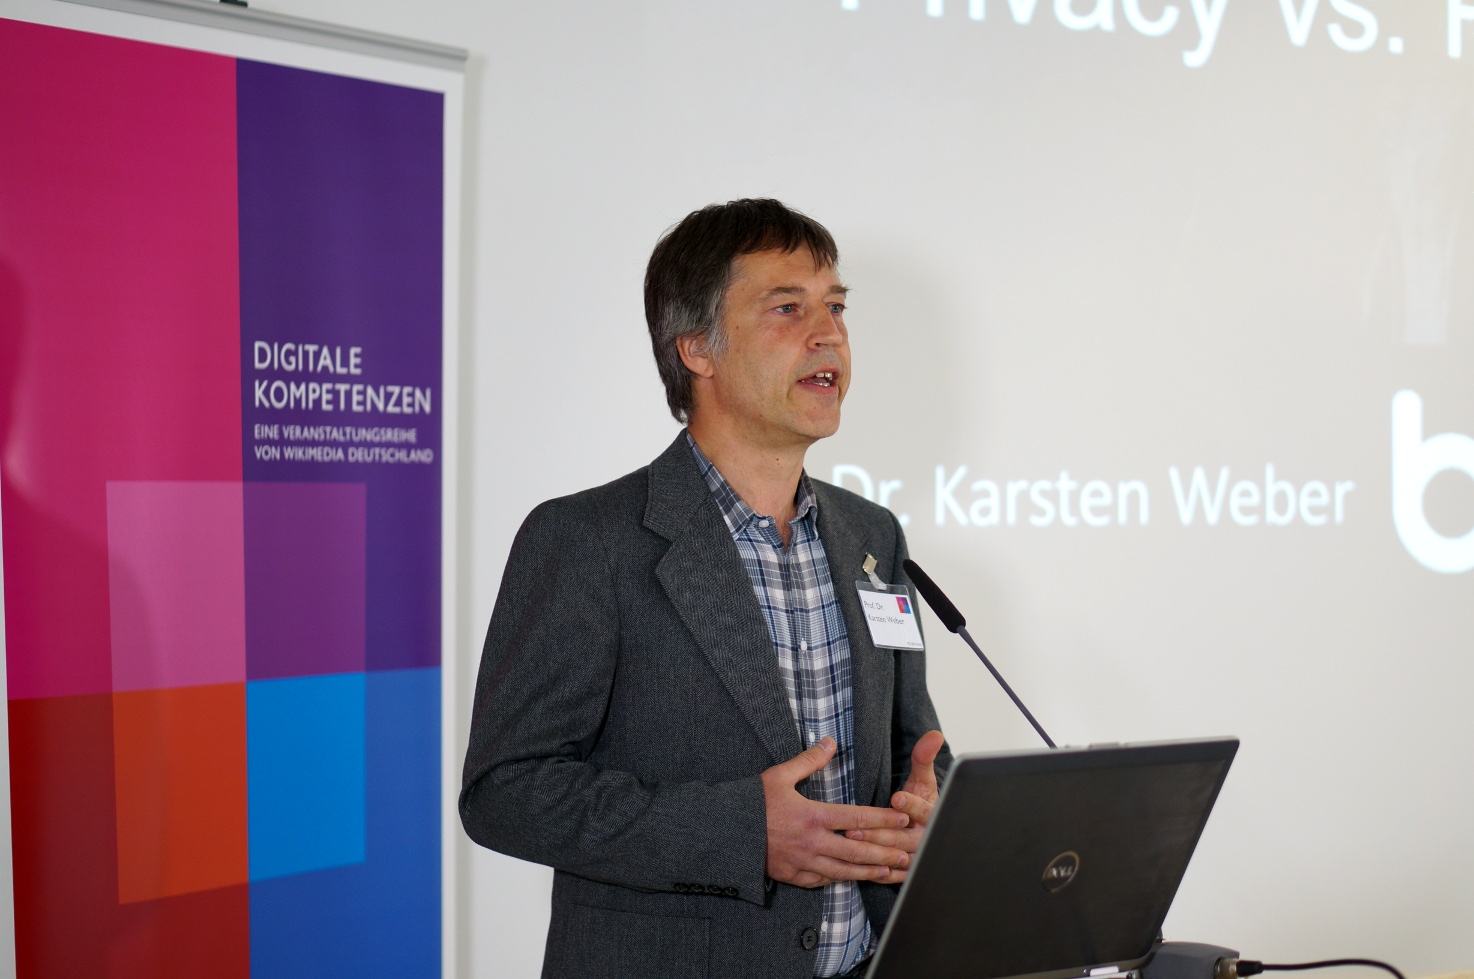 Prof. Dr. Karsten Weber - Professor für Technikwissenschaften an der Brandenburgischen Technischen Universität Cottbus-Senftenberg 2.JPG